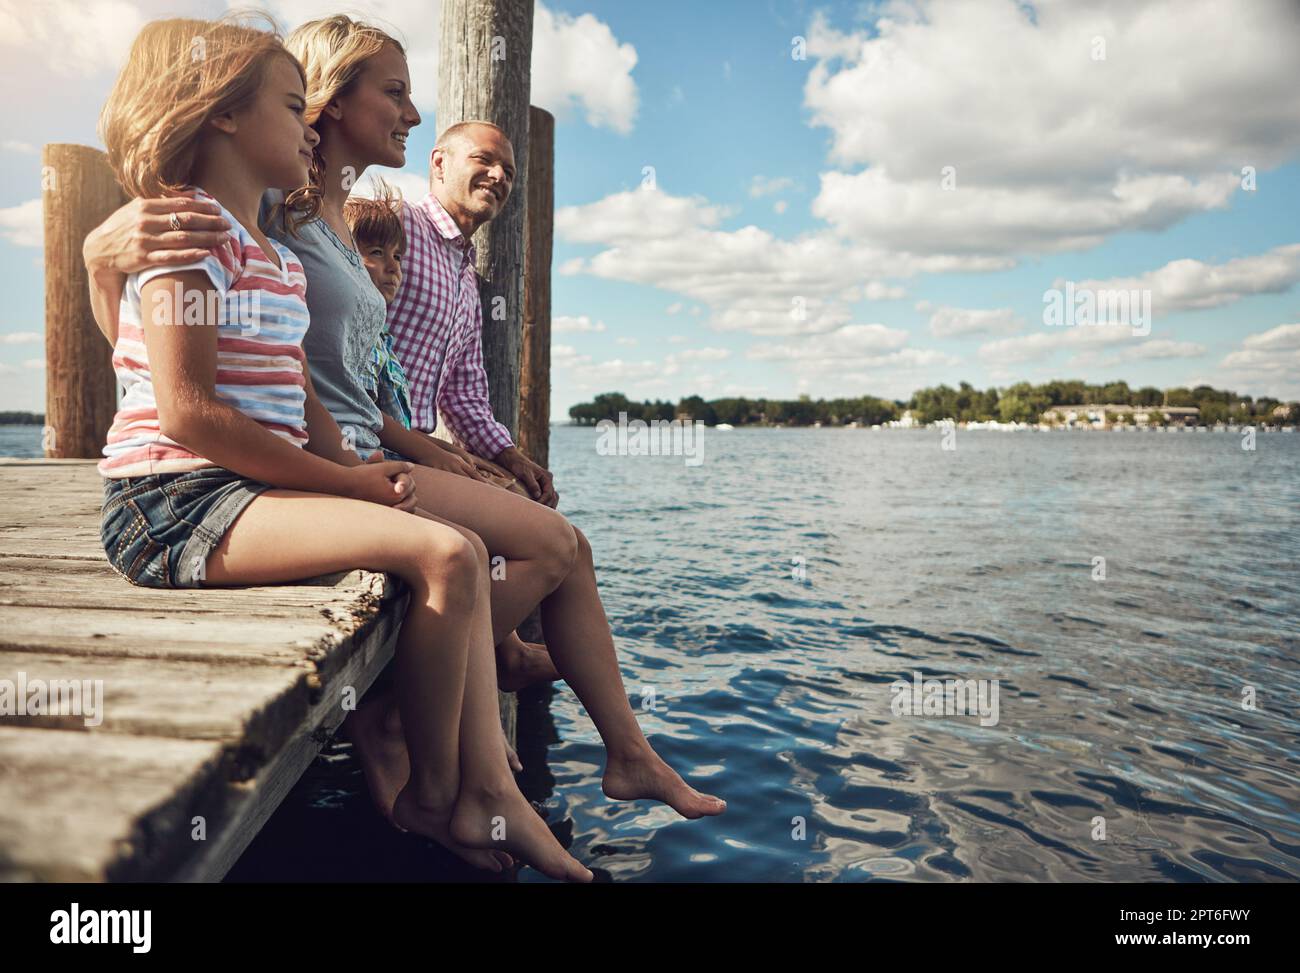 J'adore cet hôtel. une jeune famille sur une jetée au bord du lac. Banque D'Images